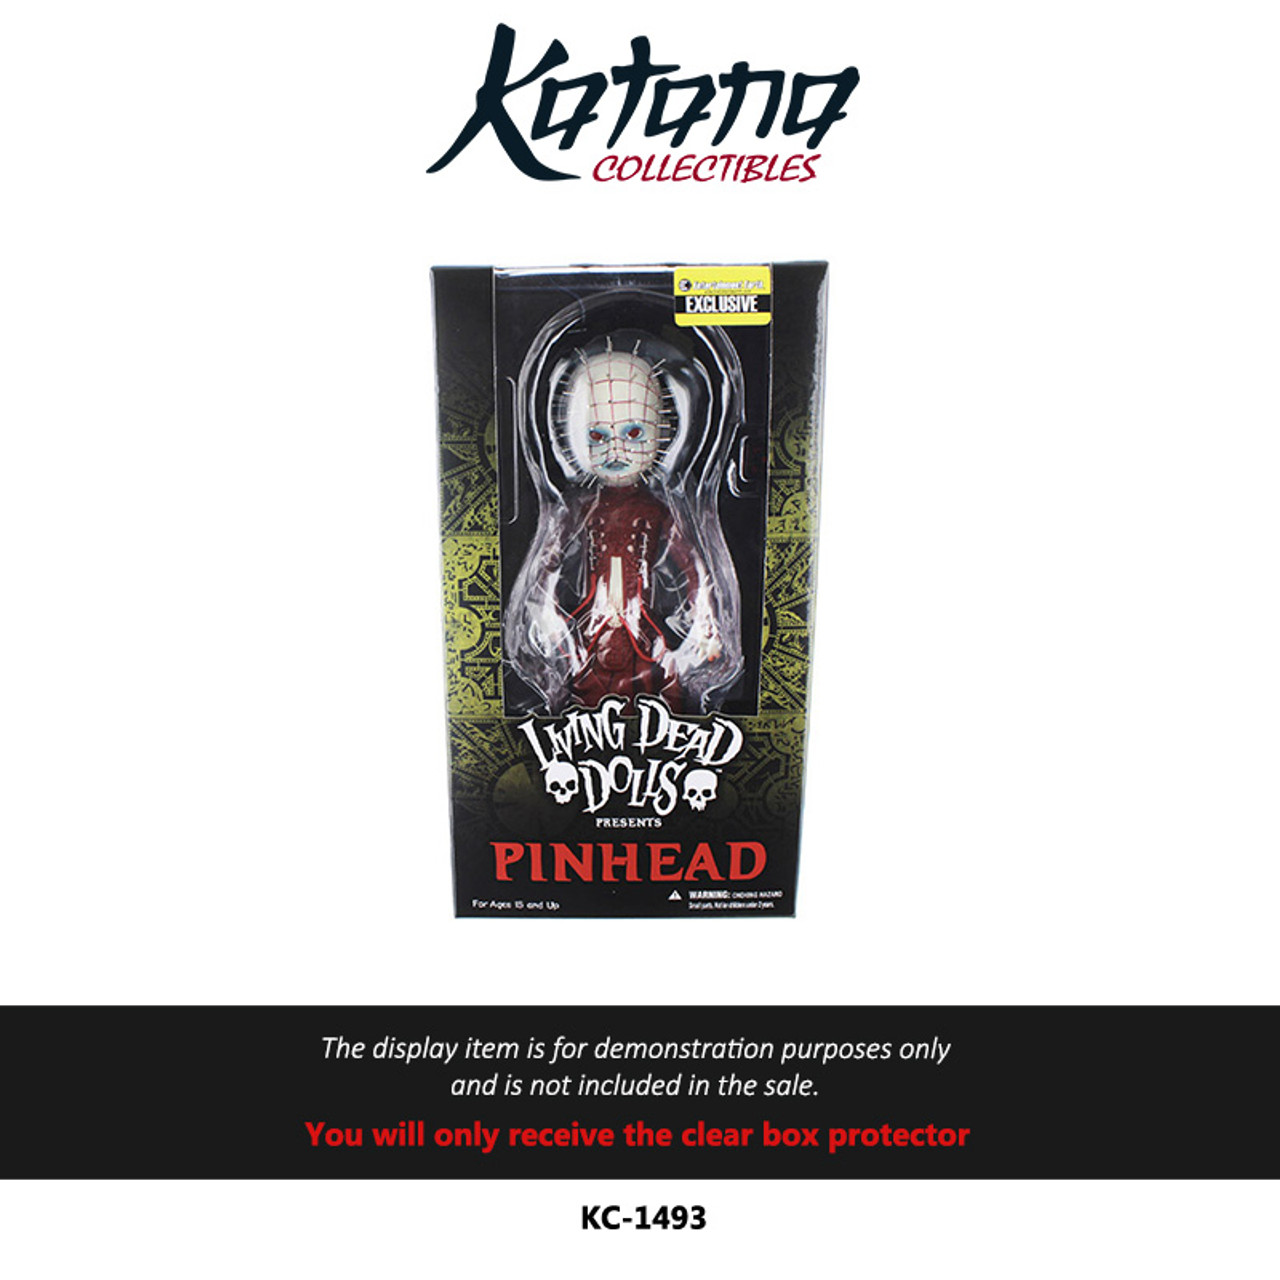 Katana Collectibles Protector For Mezco Toyz Pinhead Living Dead Doll